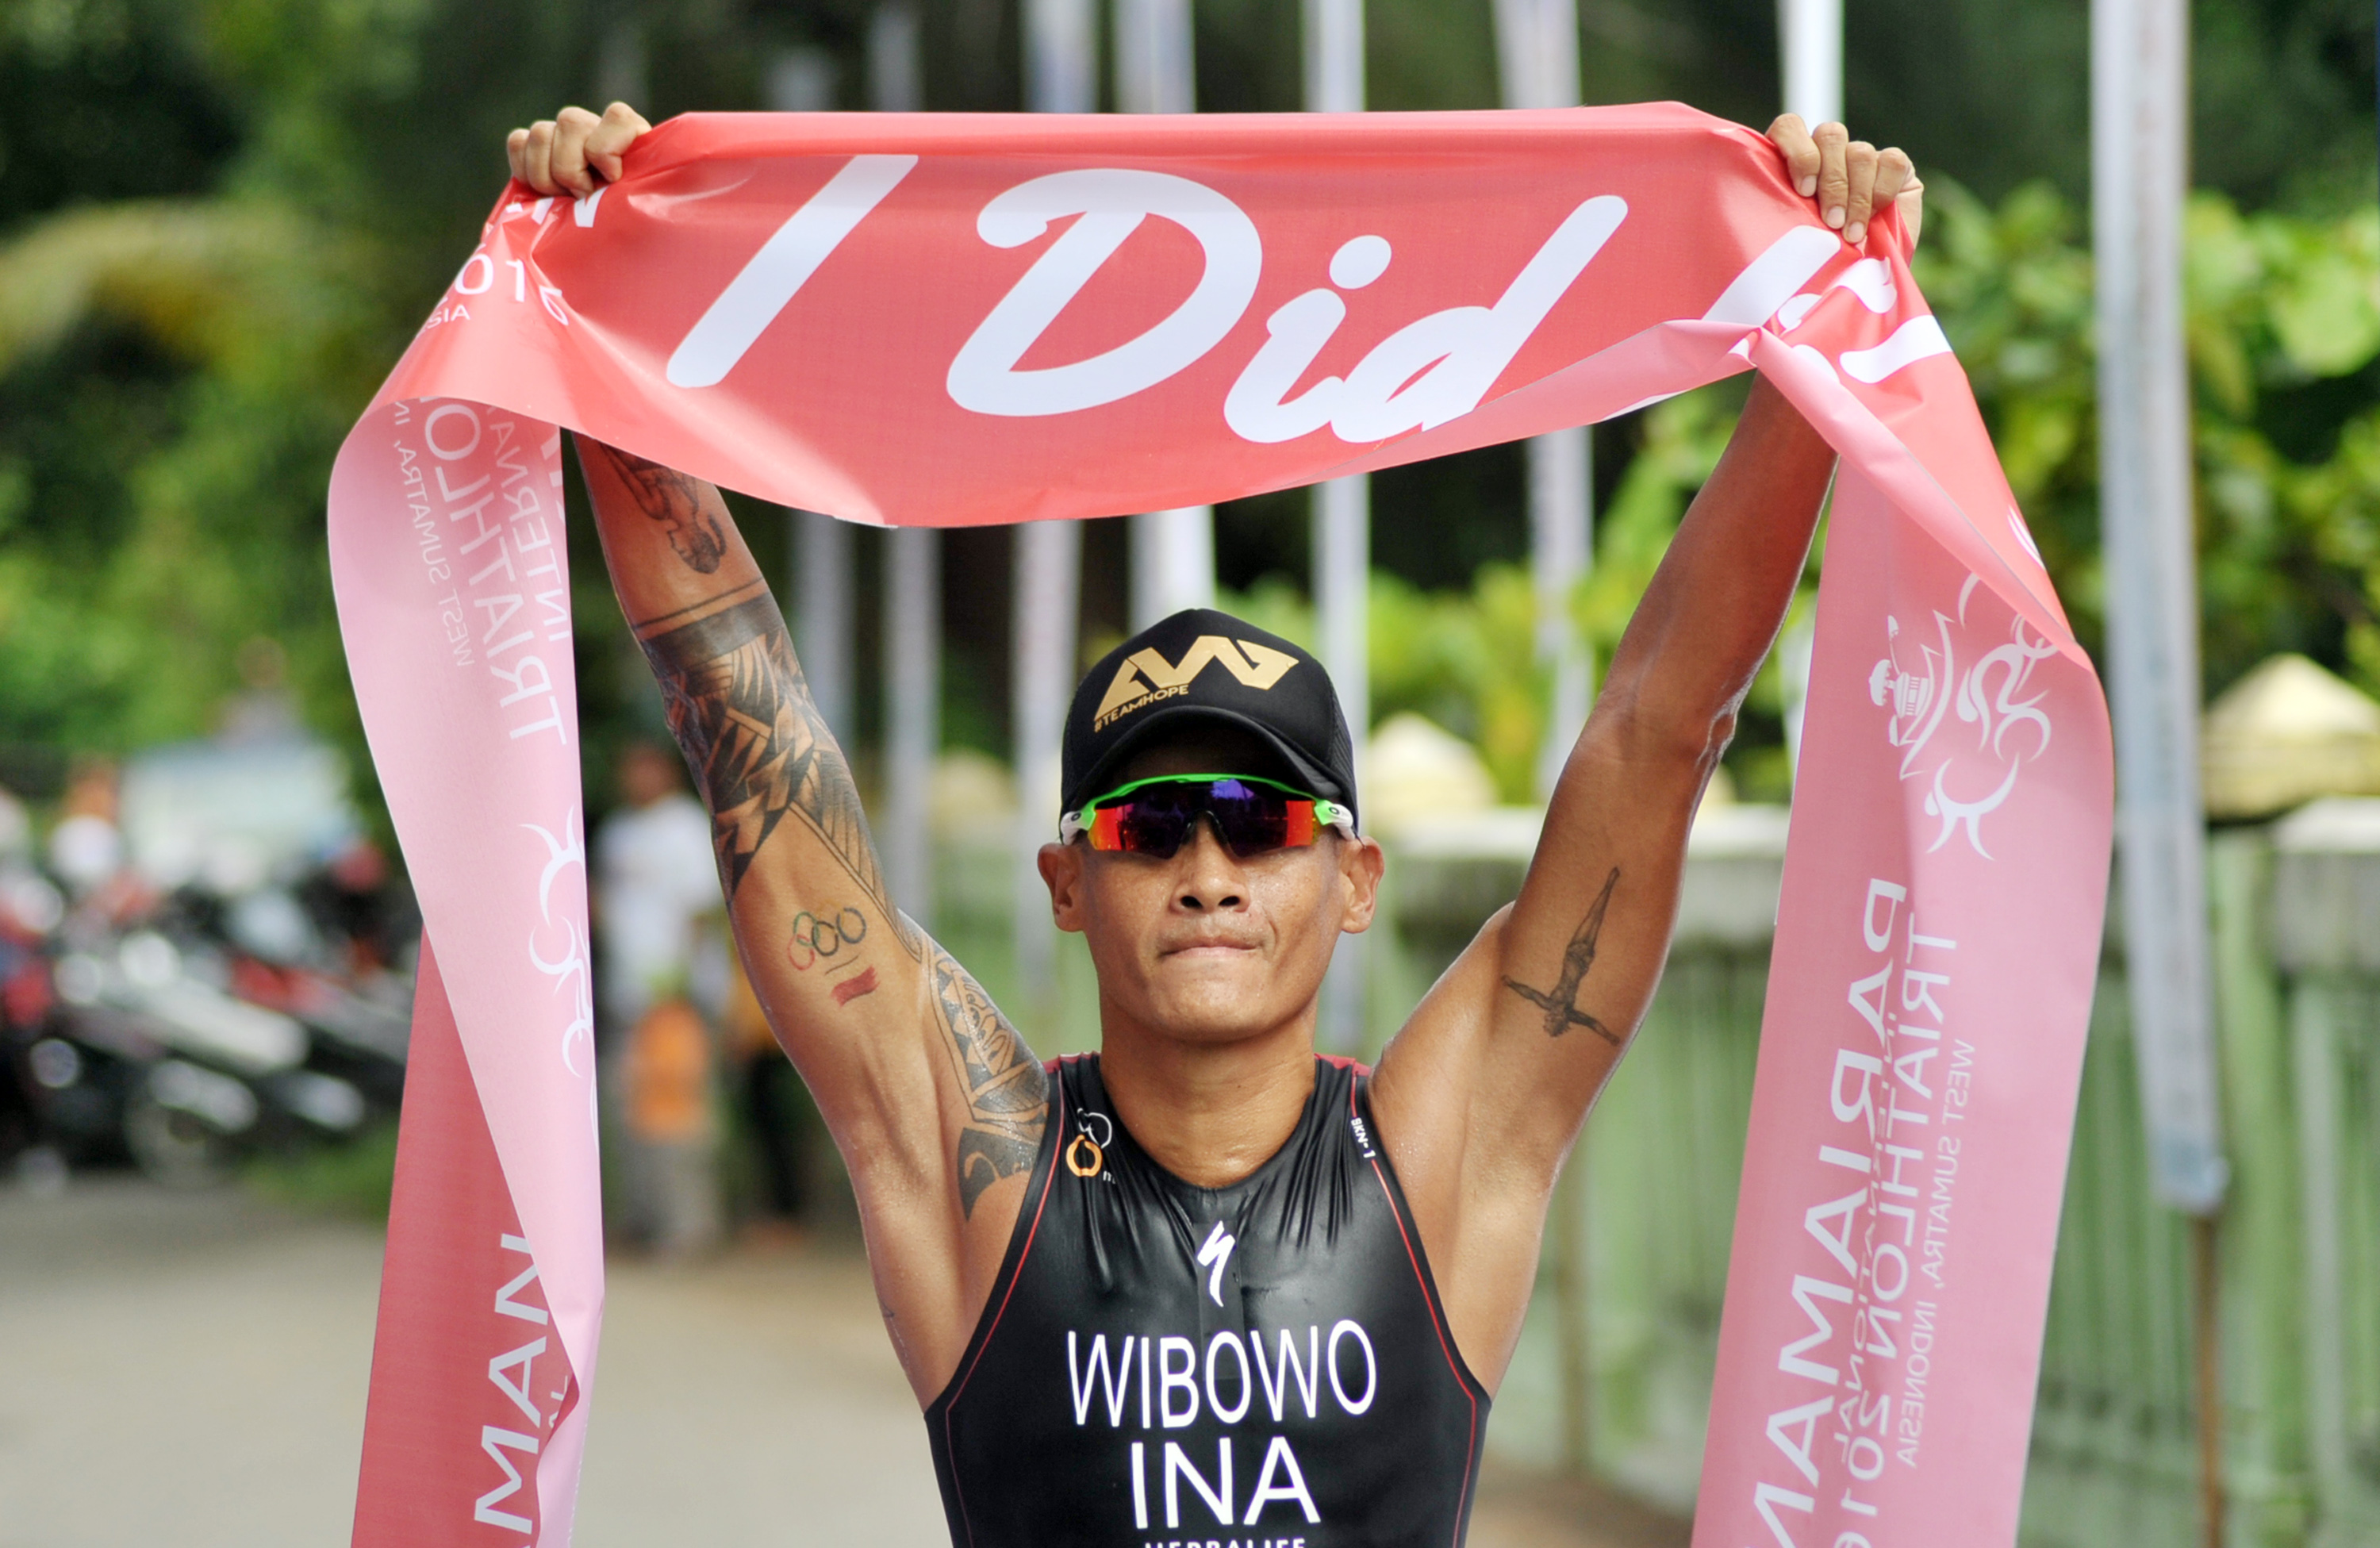 Atlet Triathlon, Andi Wibowo pertama memasuki garis finis pada kategori Elite Men dalam gelaran Pariaman International Triathlon 2016 di Pantai Cermin, Pariaman, Sumatera Barat, Sabtu (5/11). Posisi pertama Pariaman Triathlon kategori Men Elite diraih And